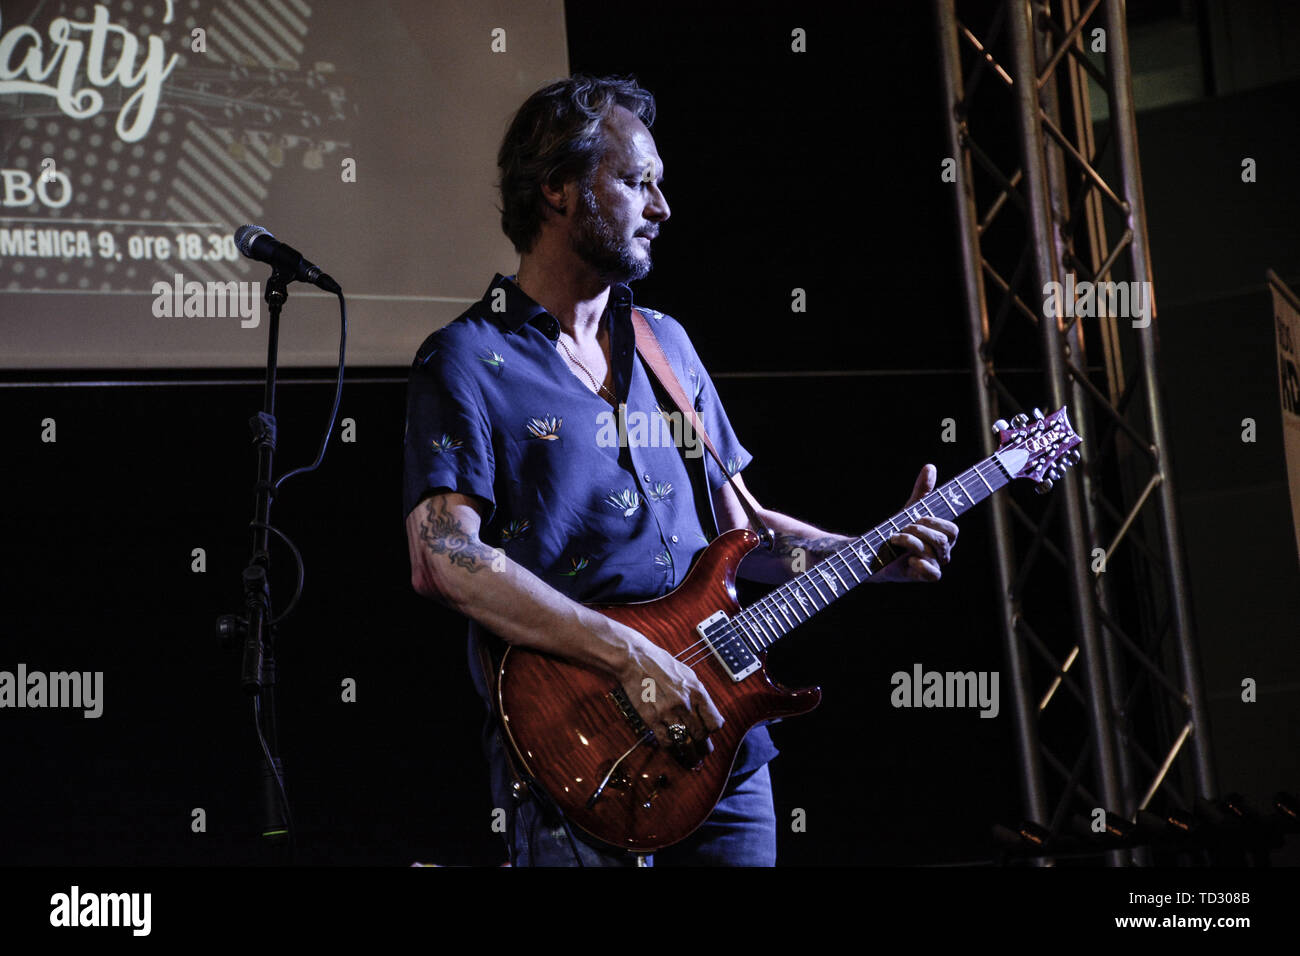 Le célèbre guitariste, arrangeur et professeur Luca Colombo, connu pour  être le guitariste de Festival de Sanremo et de nombreux artistes de la  musique italienne et internationale, se produit dans le dernier '